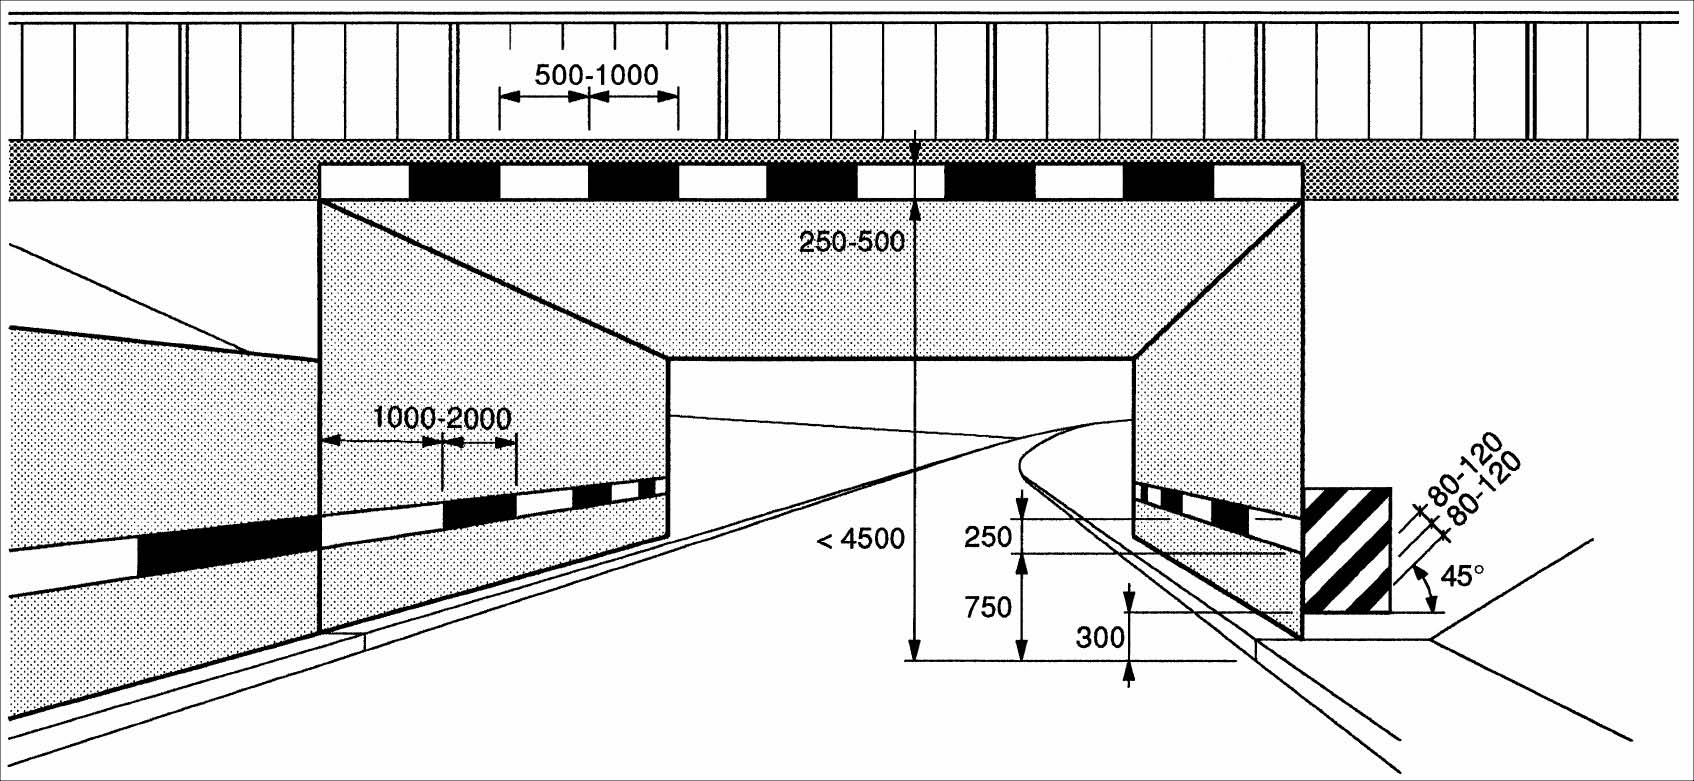 Leiteinrichtung: Seitlich/oberhalb der Fahrbahn, schwarz weiss (50/50 cm), 200/25 cm, DG3, Alu 2 mm